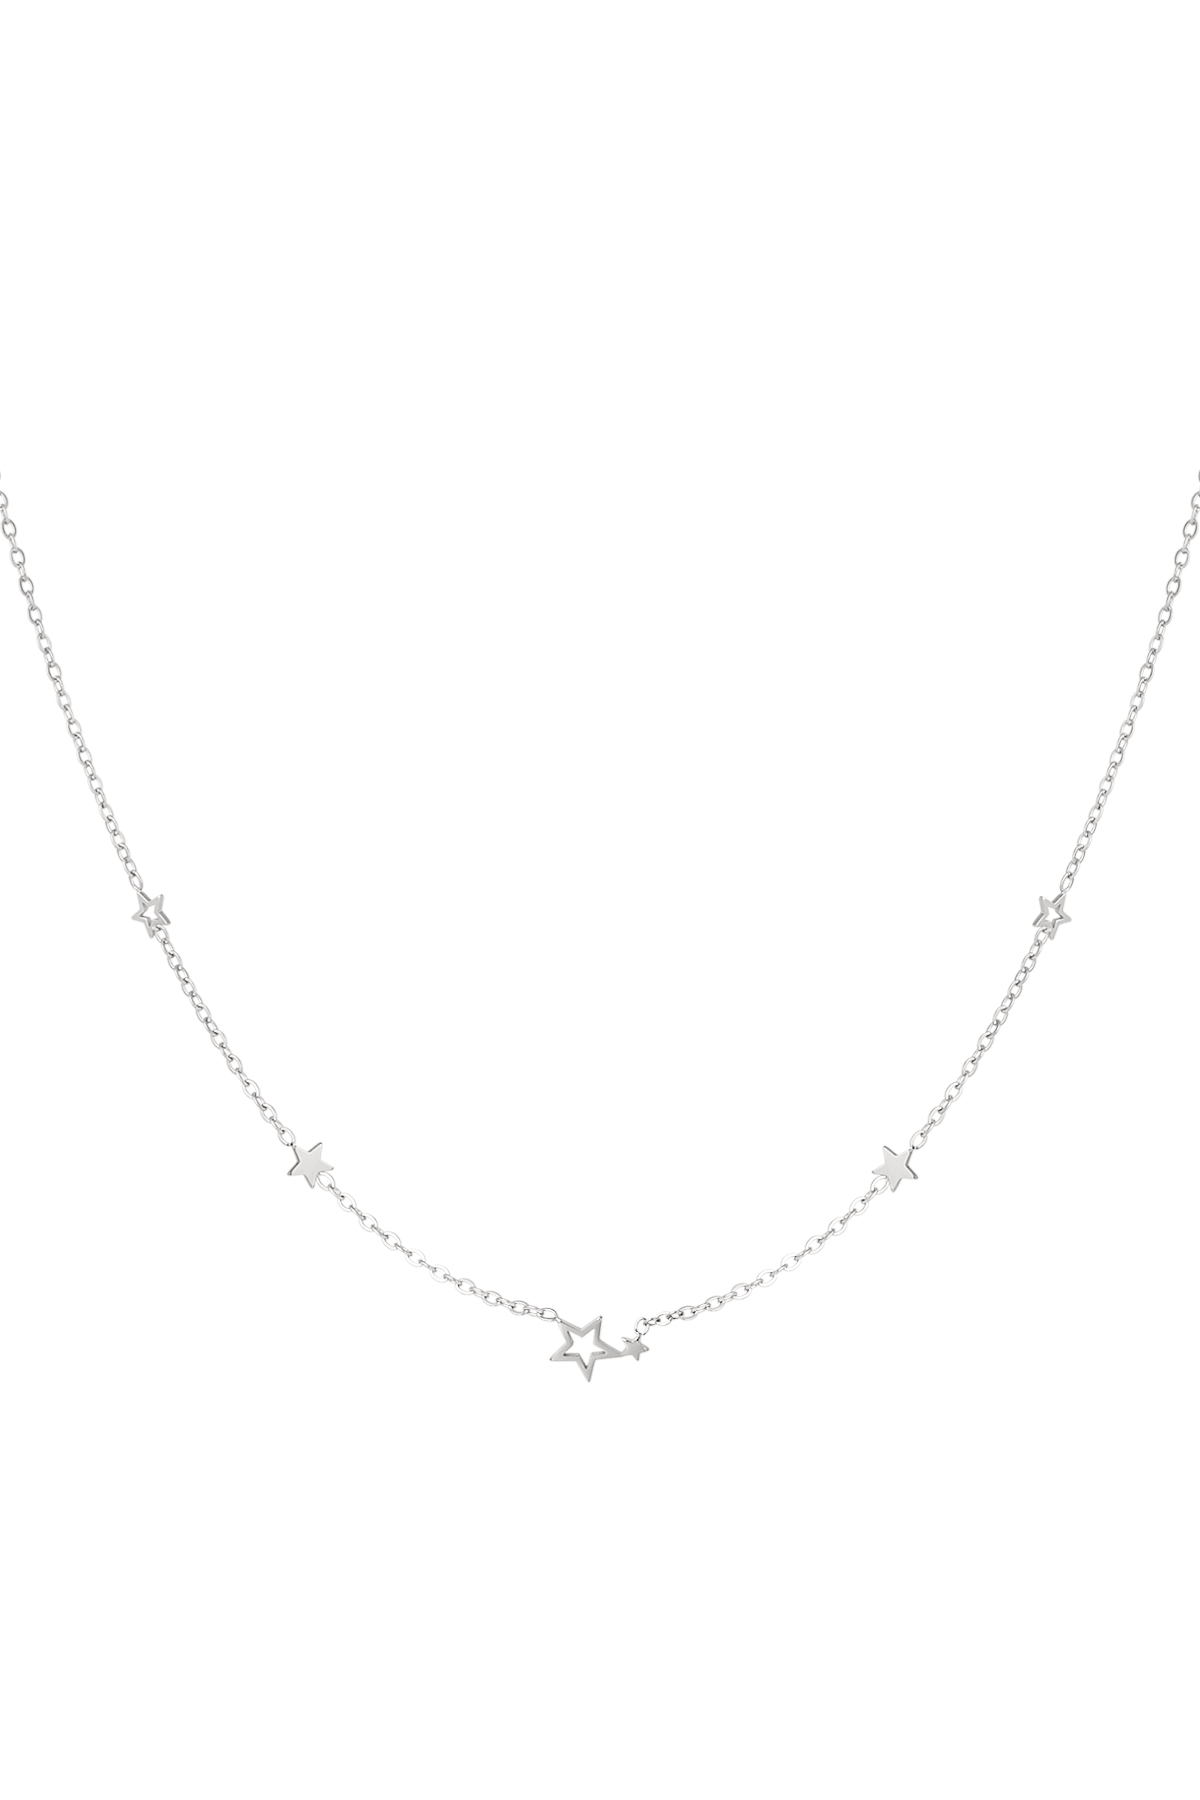 Halskette Edelstahlsterne - Silber h5 